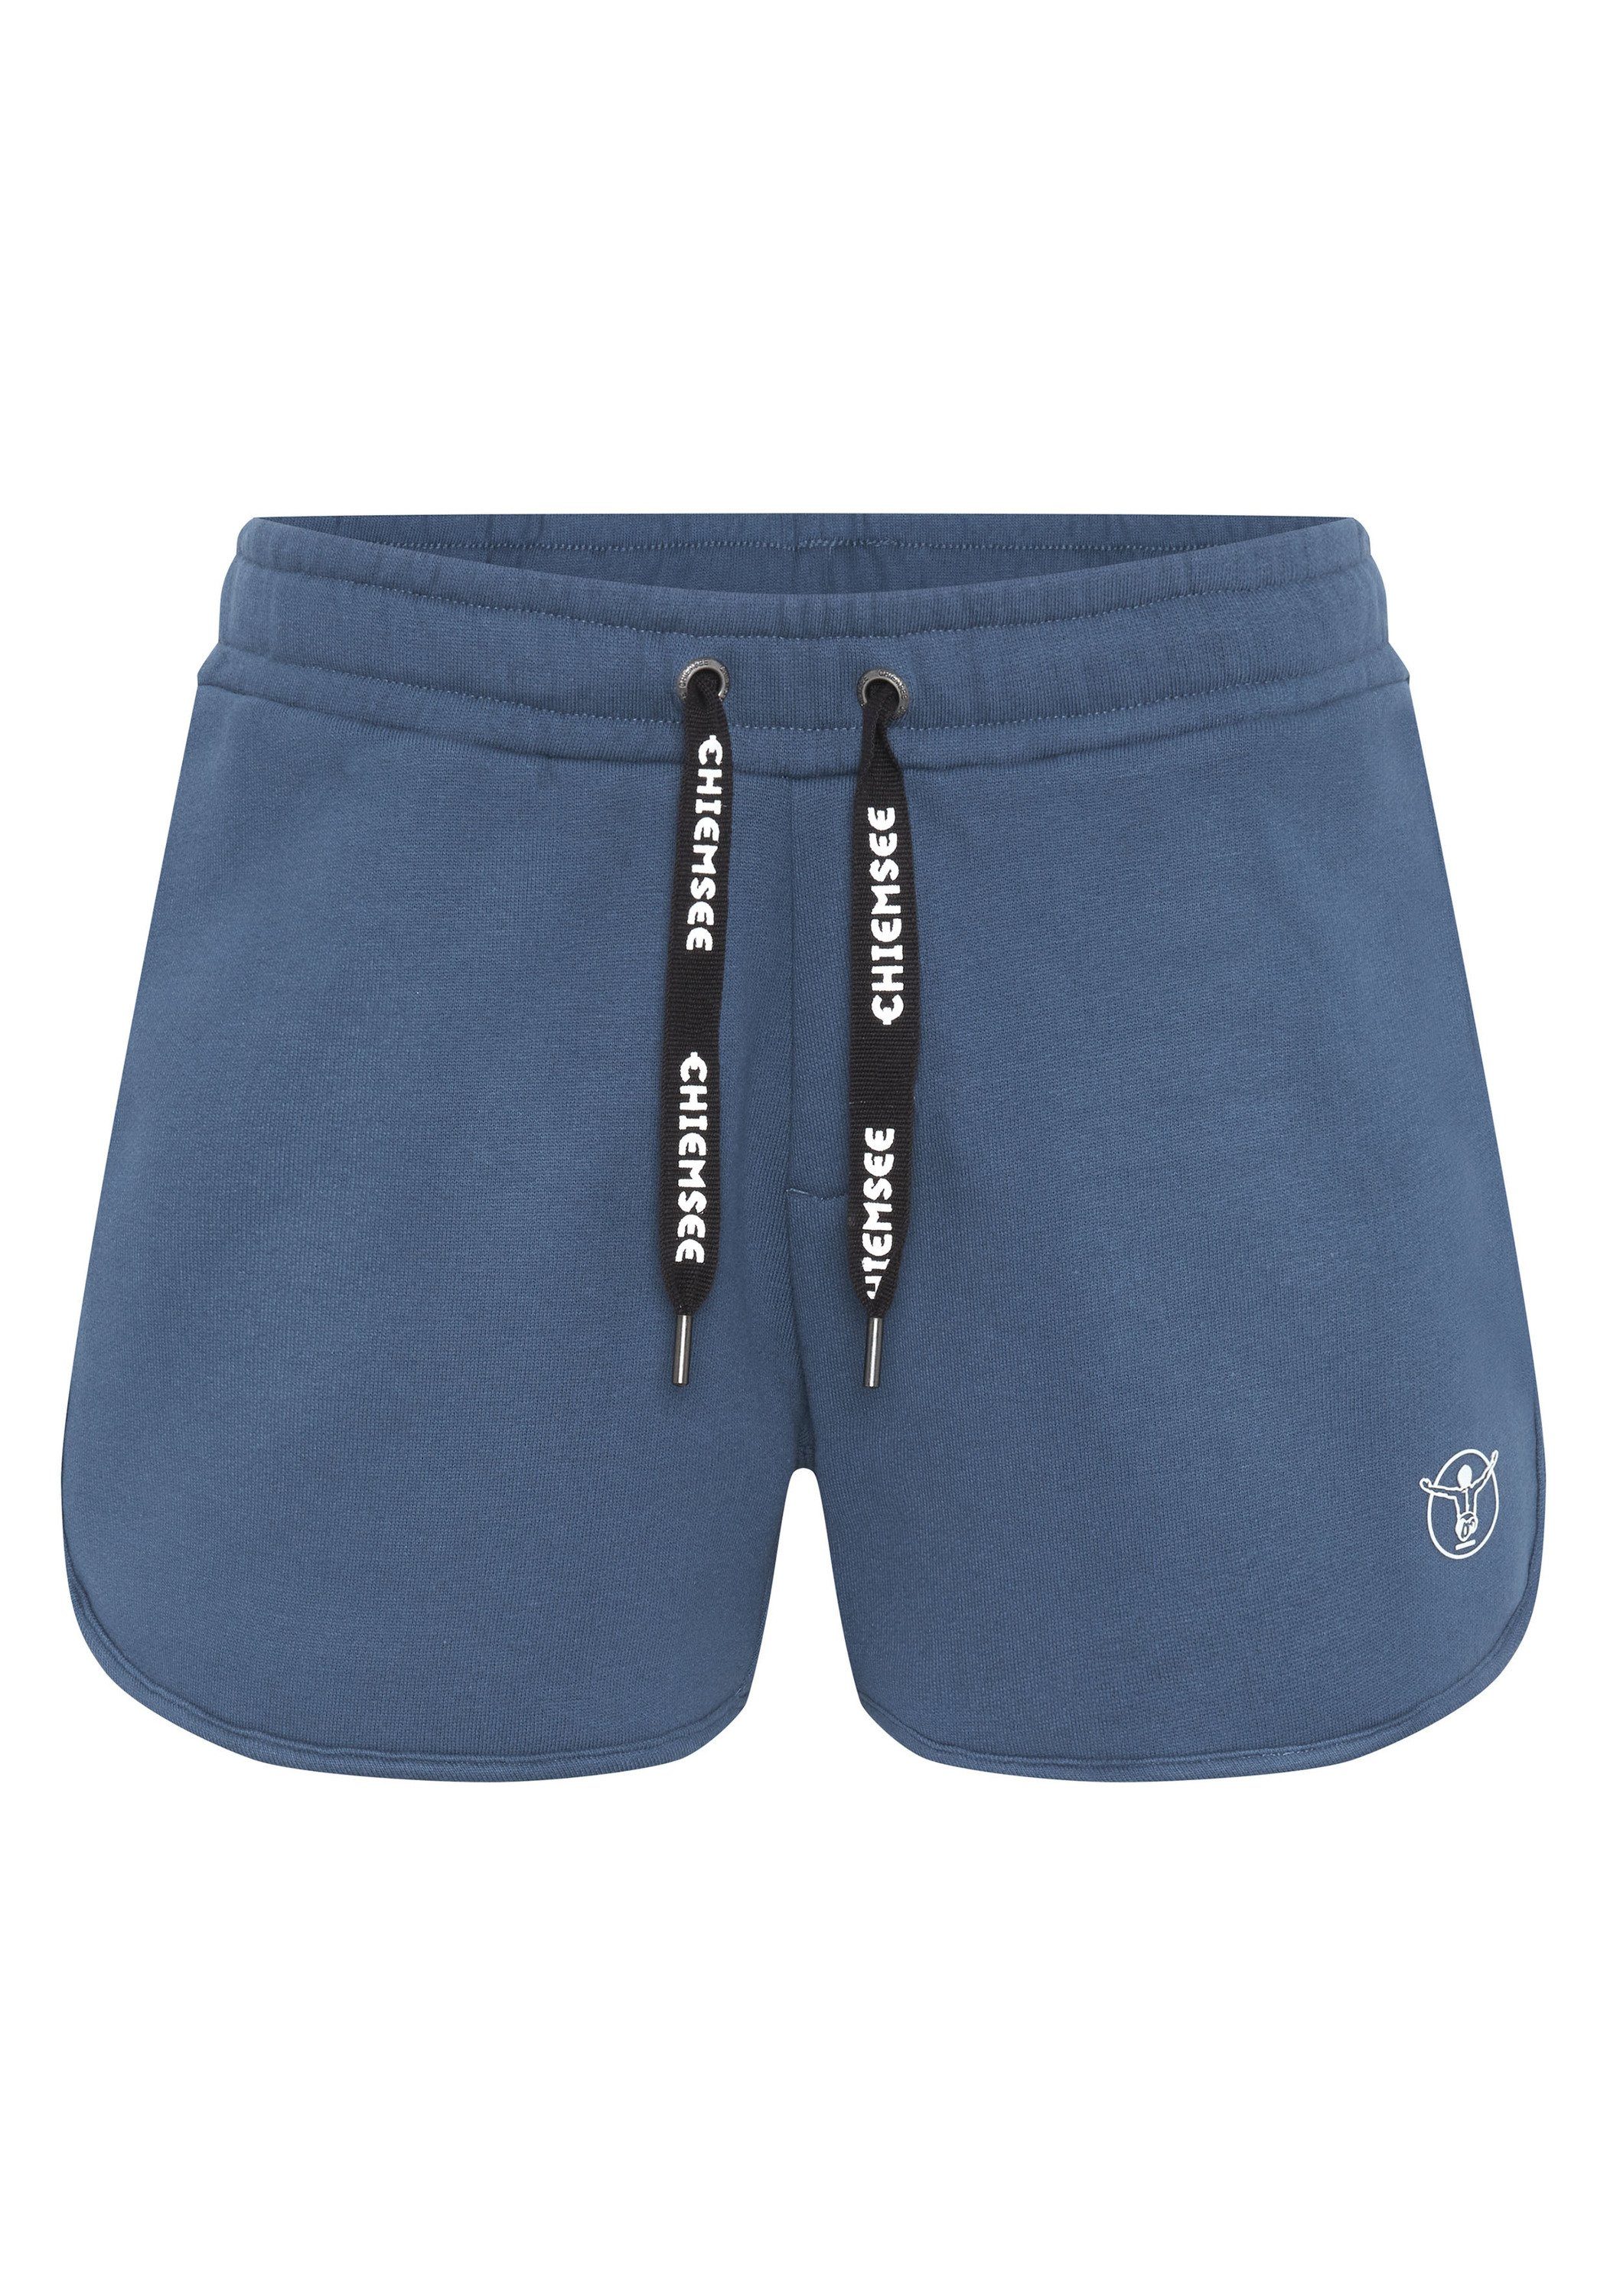 Kaufentscheidung Chiemsee Sweatshorts Sweat-Shorts mit breitem Denim 1 Dark Bund